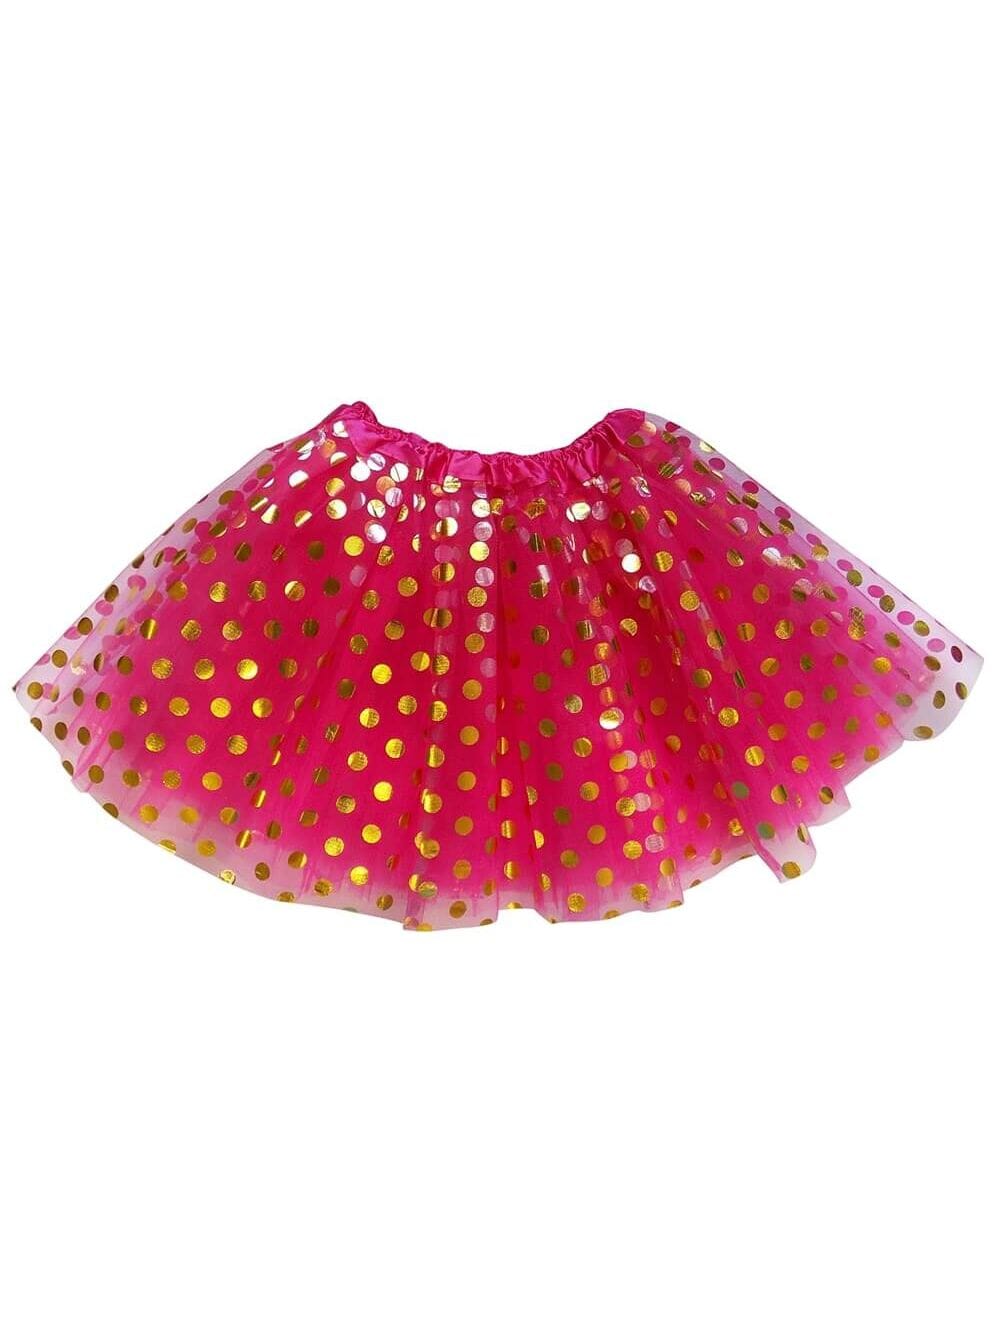 Hot Pink and Gold Polka Dot Tutu Skirt Costume for Girls, Women, Plus - Sydney So Sweet